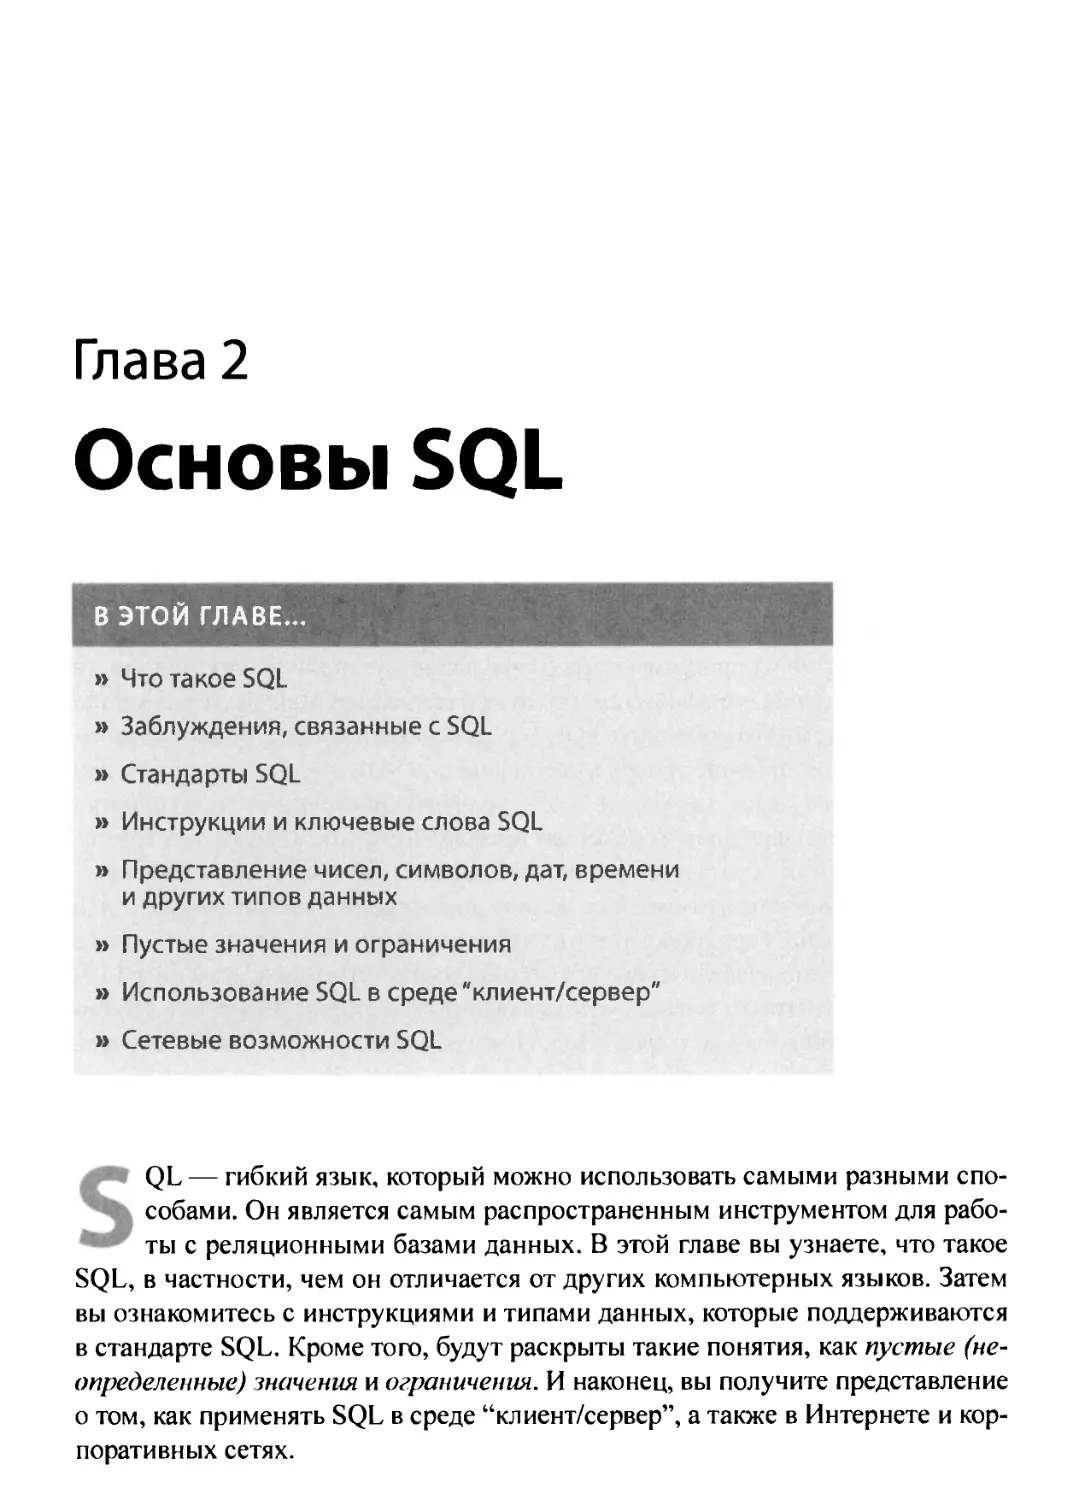 2. Основы SQL